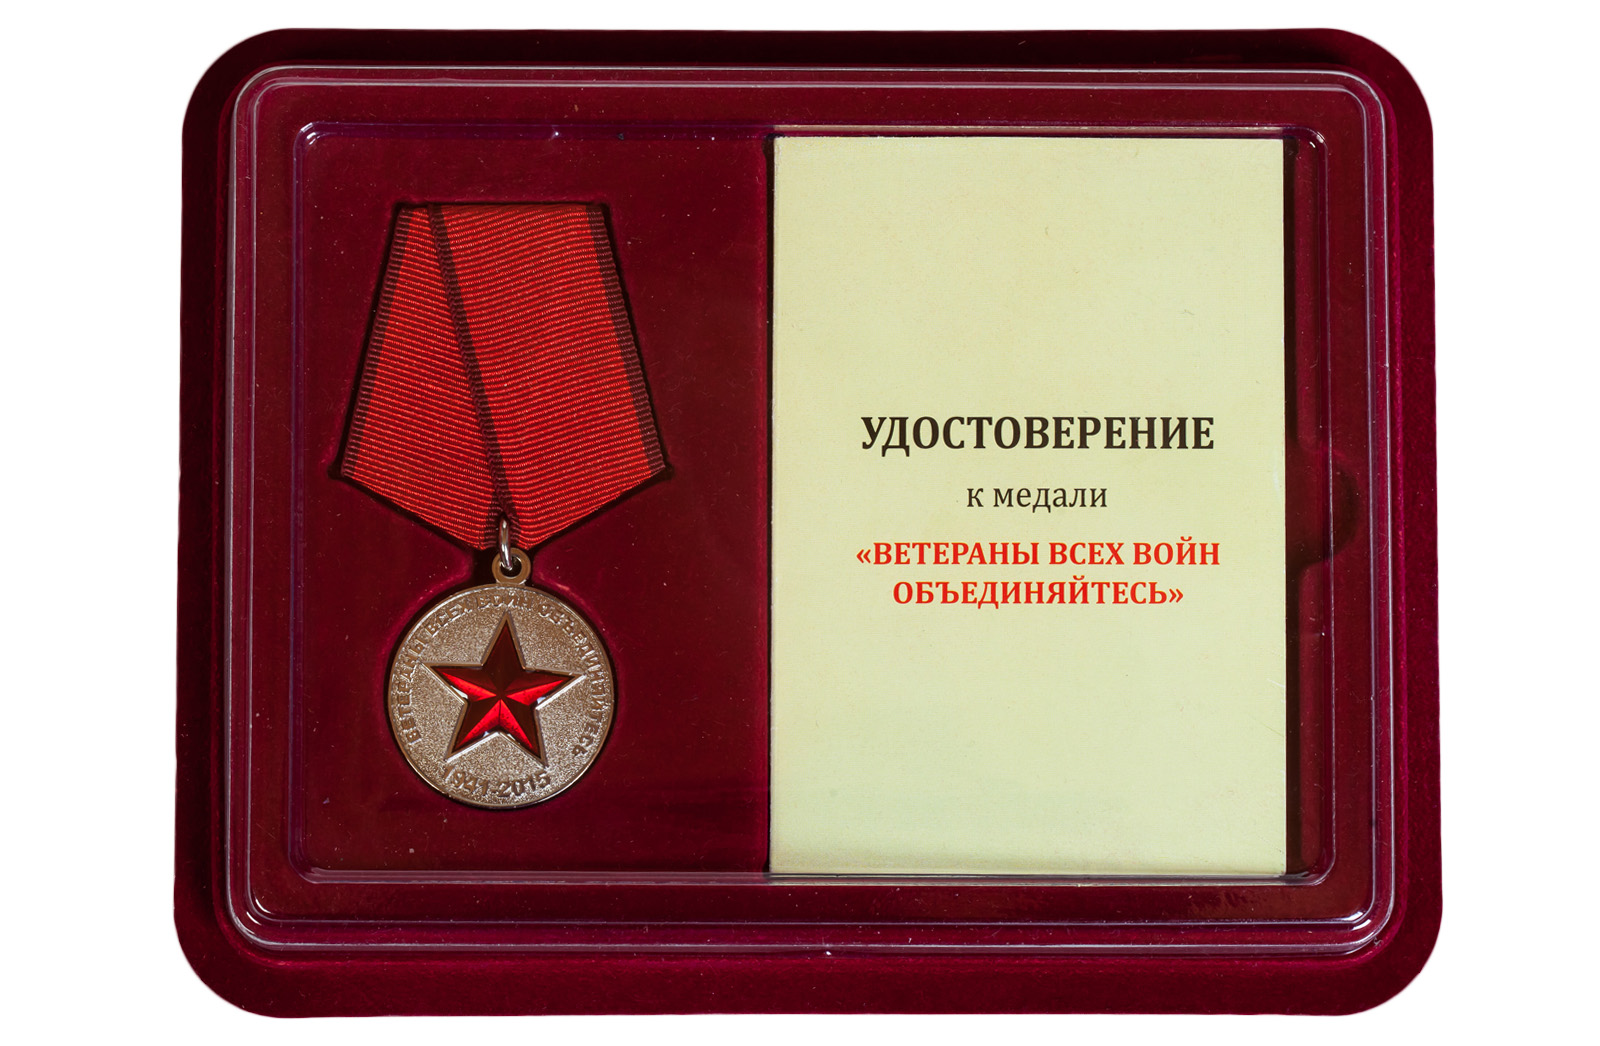 Купить медаль "Солдат своей страны" с доставкой онлайн